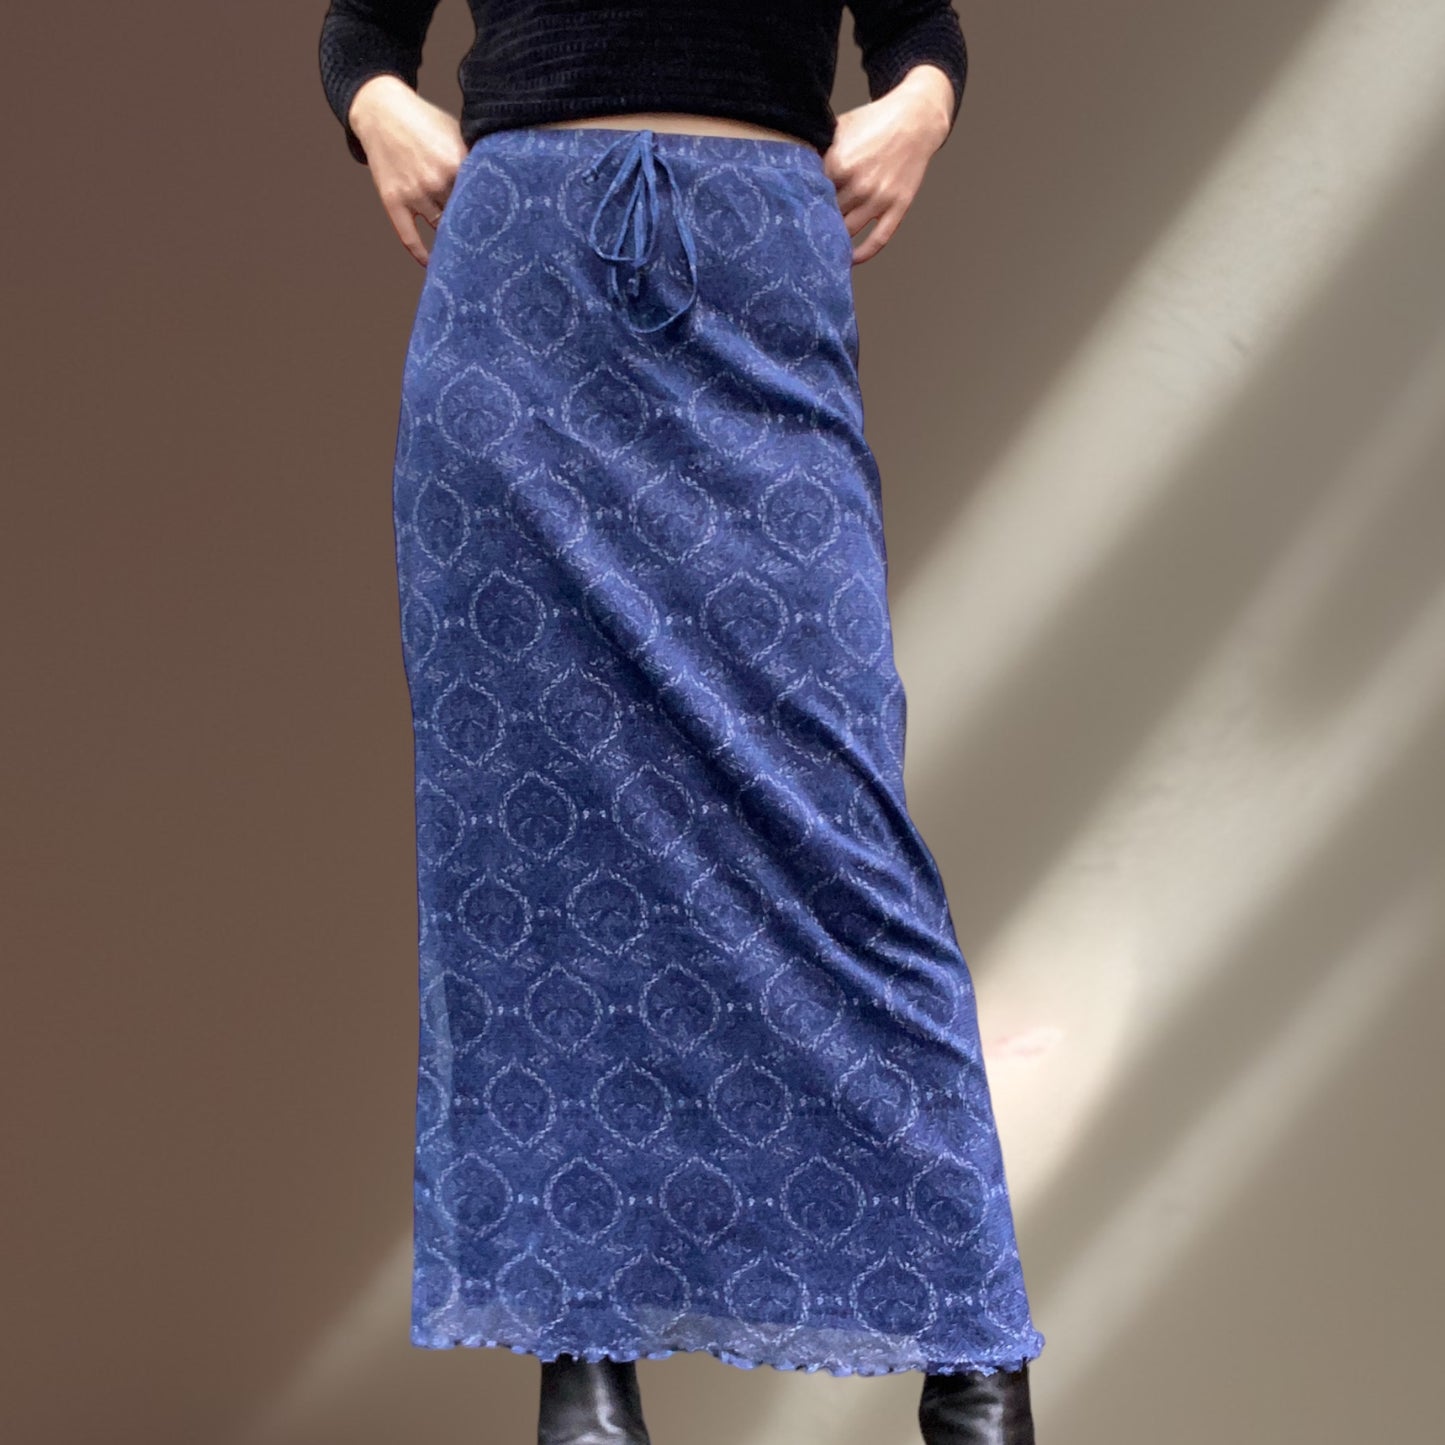 Ocean Mesh Skirt Size 12